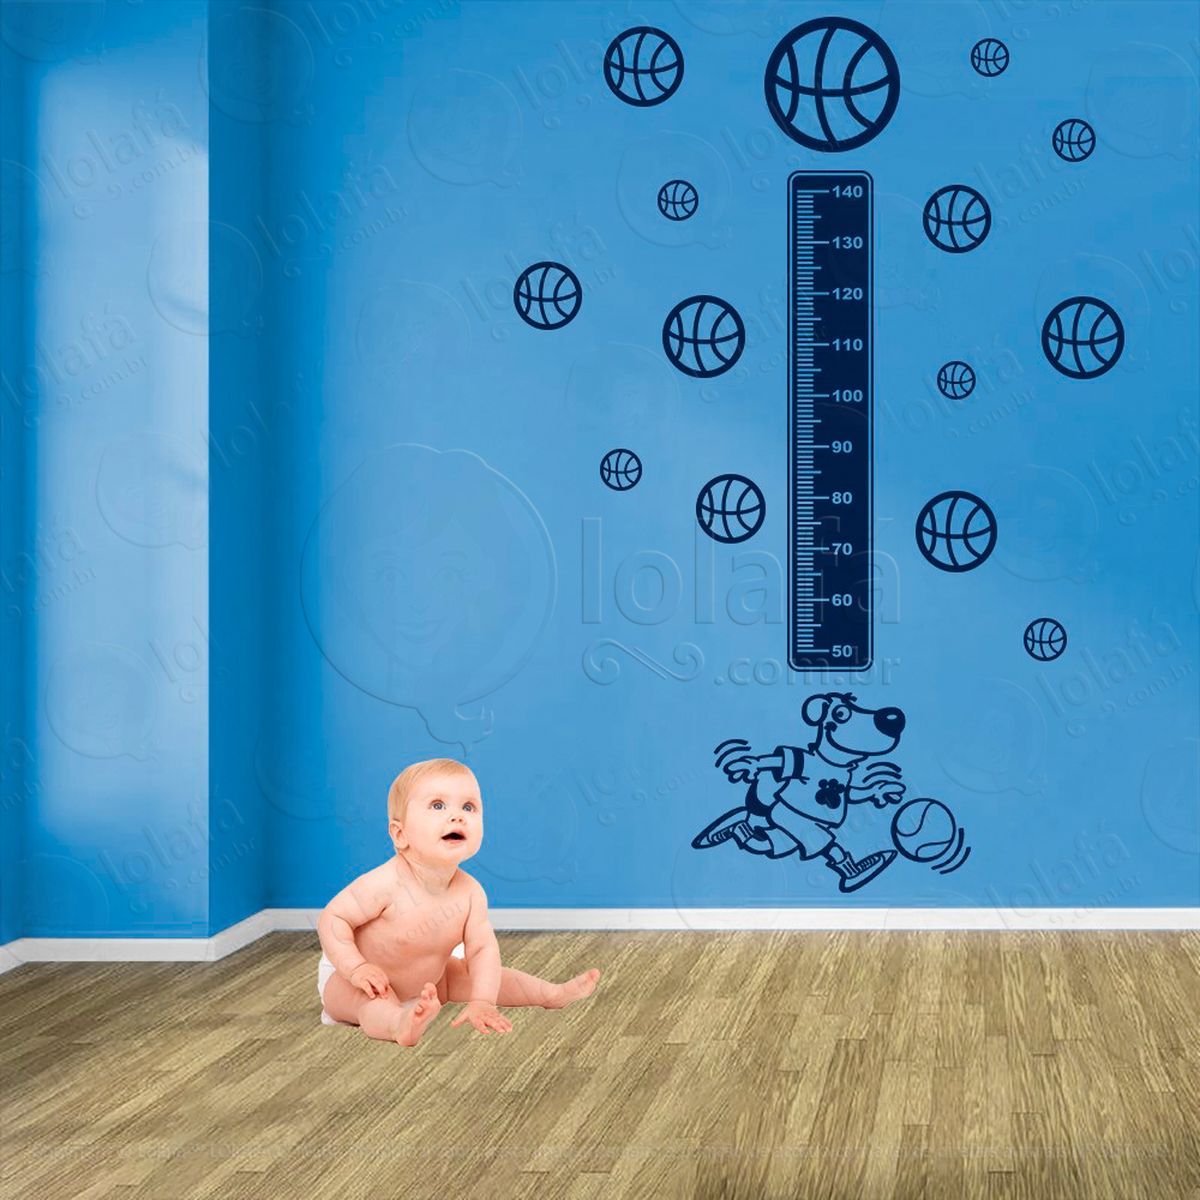 basquetebol e bolas de basquete adesivo régua de crescimento infantil, medidor de altura para quarto, porta e parede - mod:271